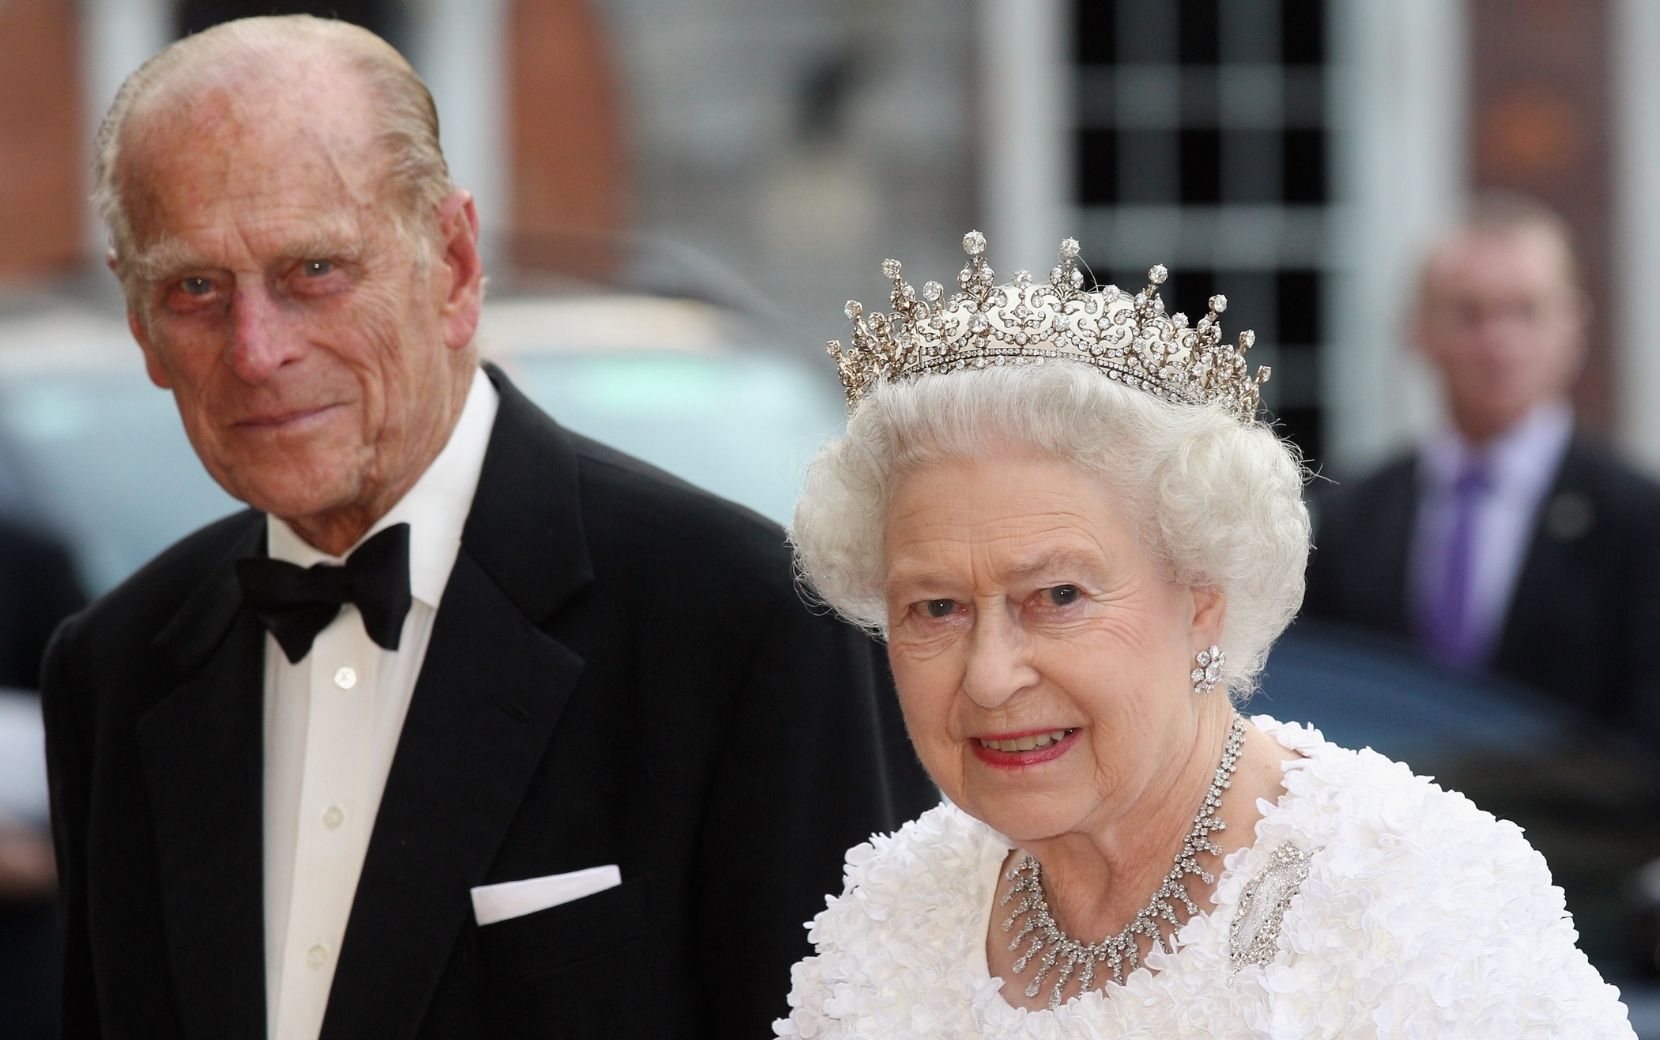 Príncipe Philip, marido da rainha Elizabeth II, morre aos 99